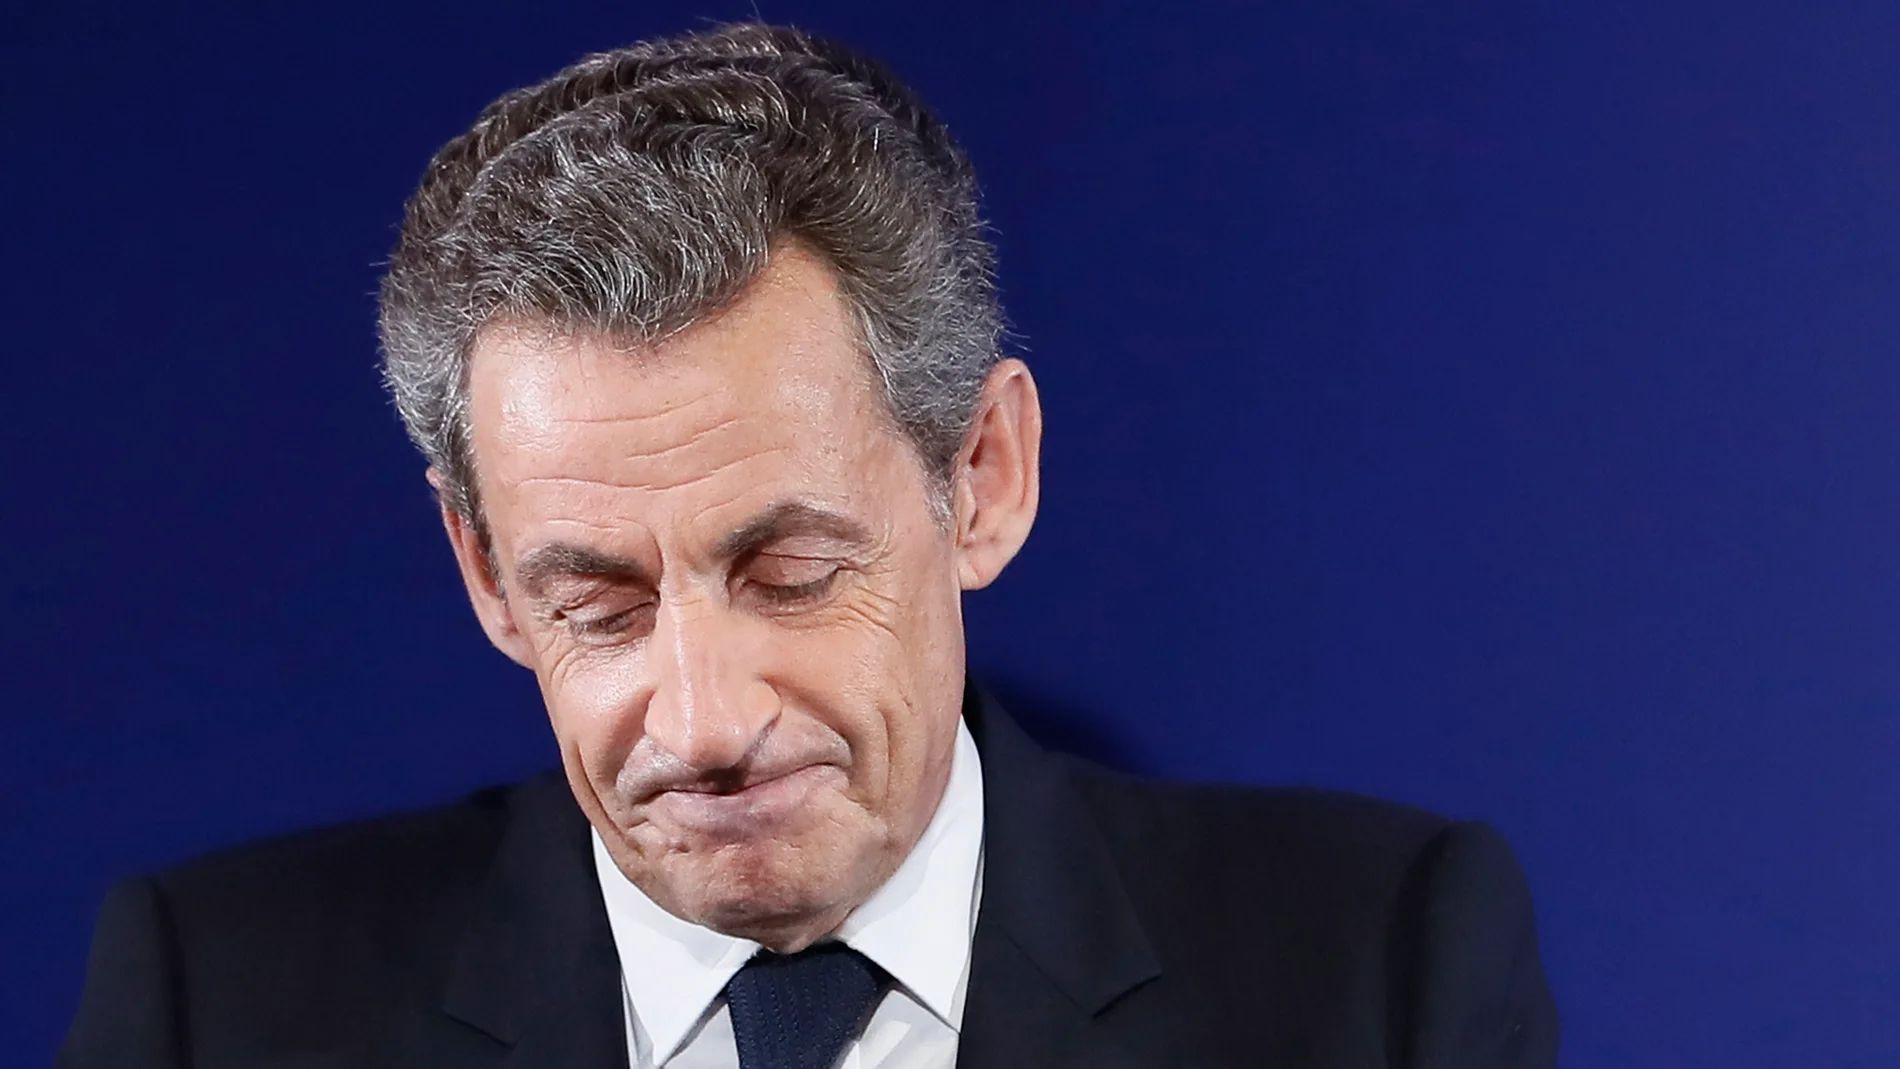 El ex presidente francés acude a la televisión pública para defender su inocencia